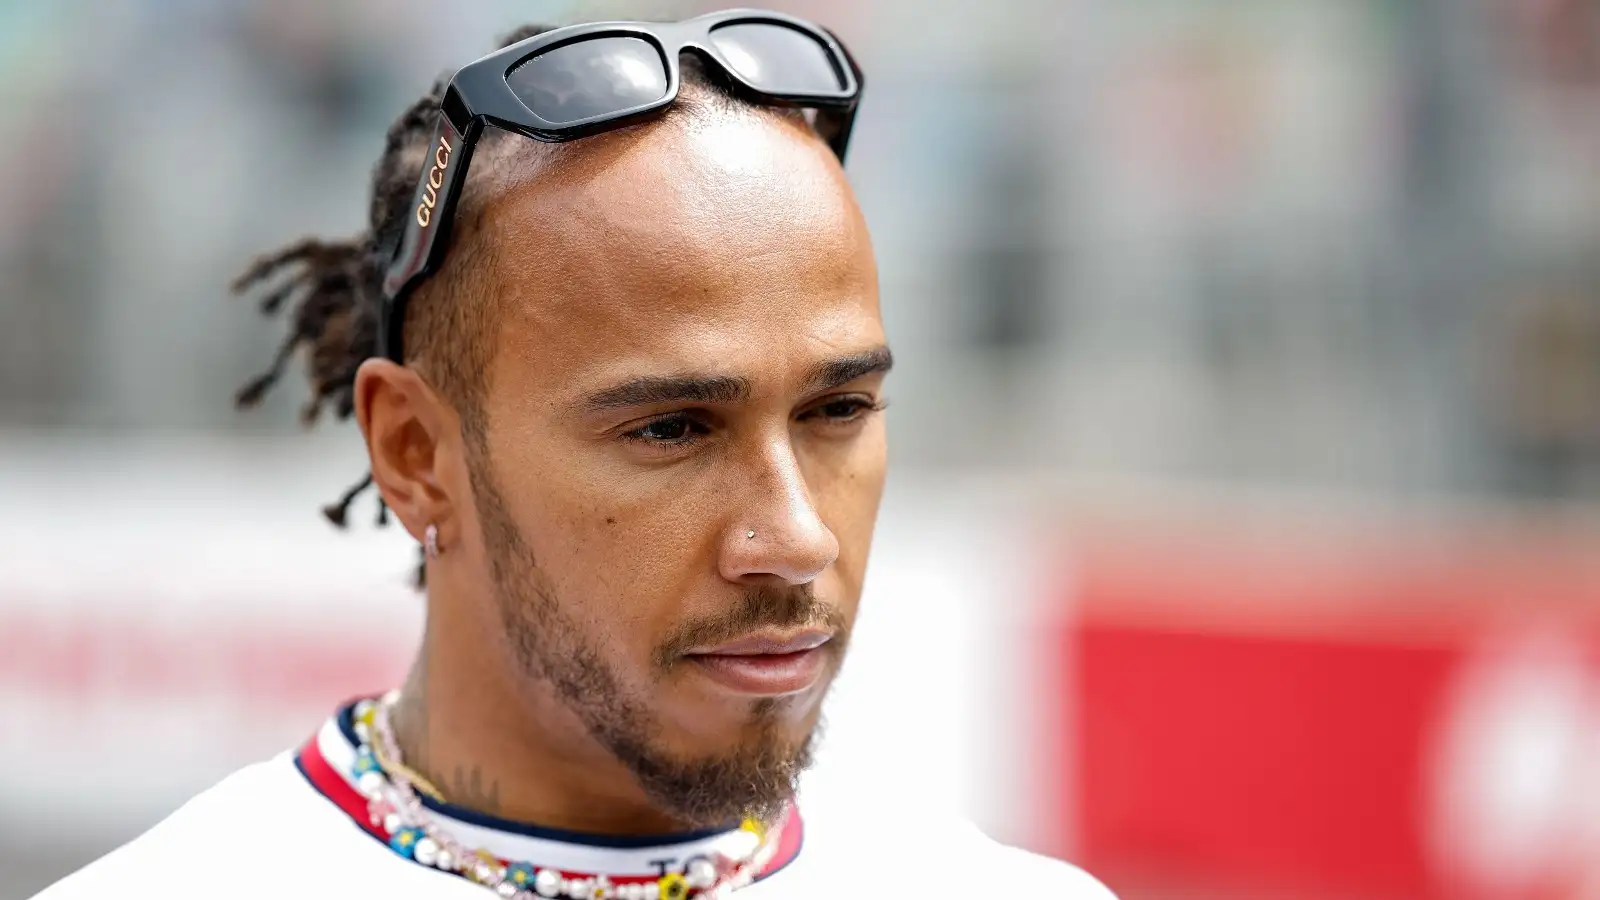 Lewis Hamilton out of his race suit.